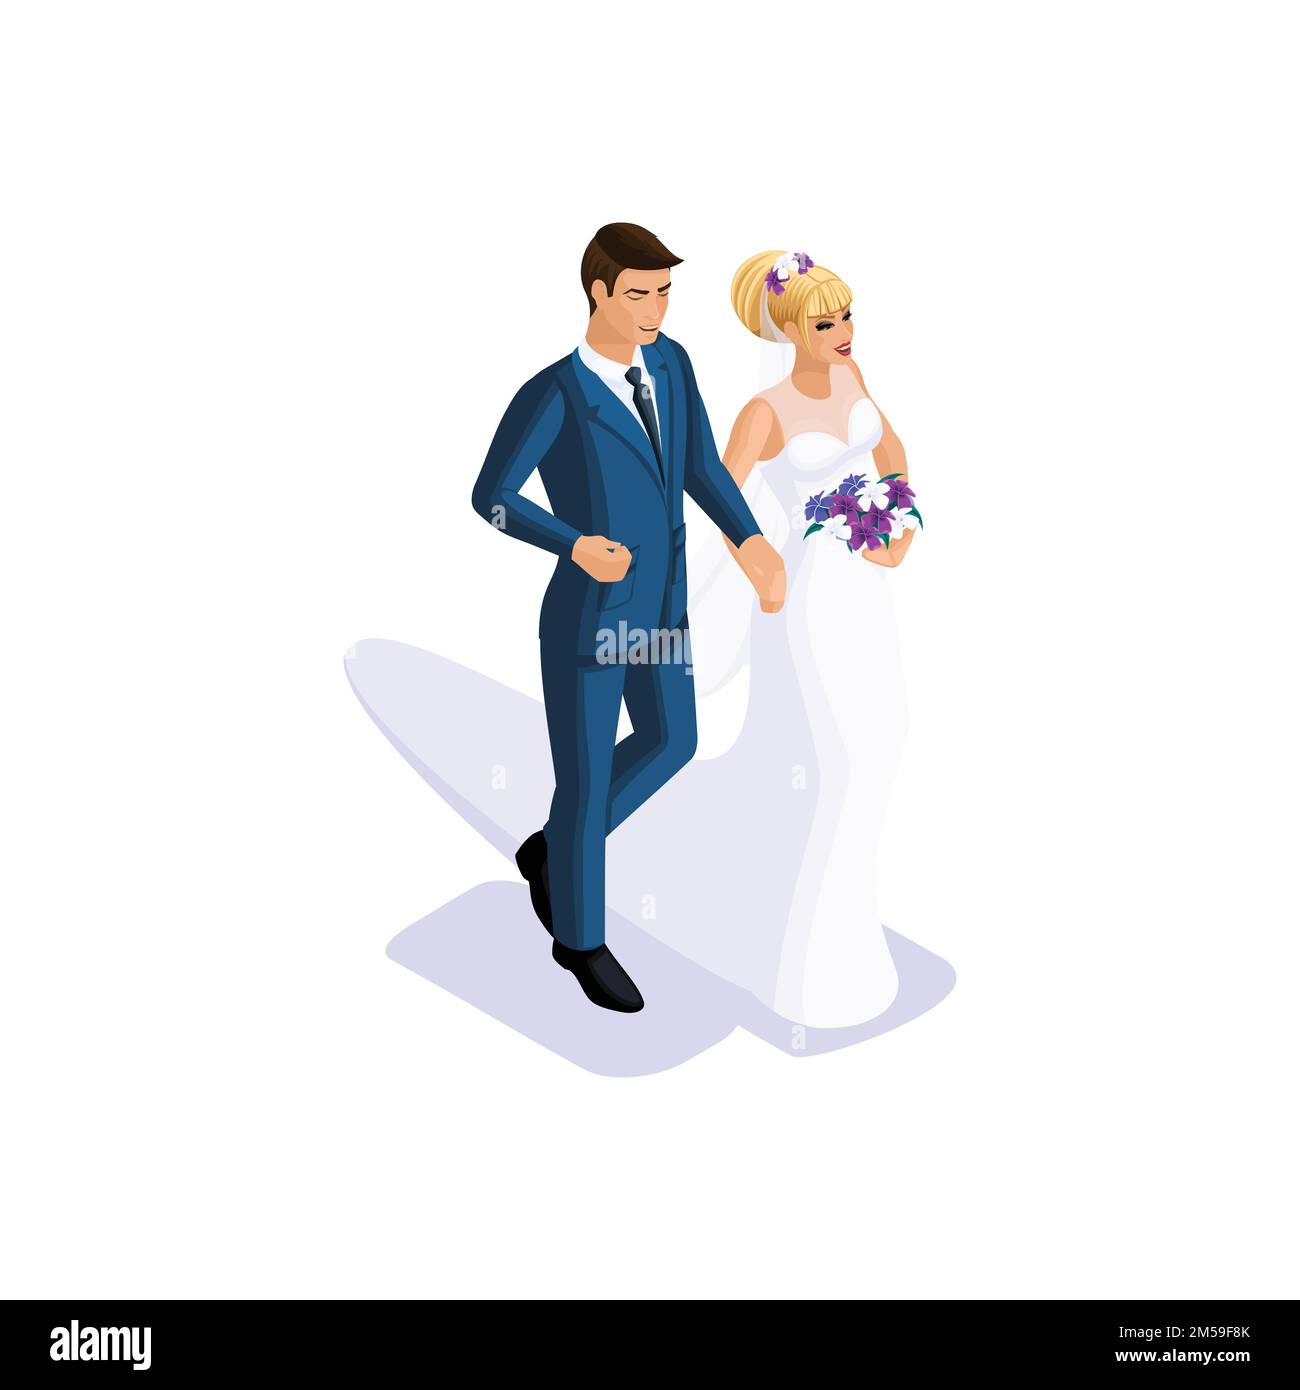 Isometrics du marié et de la mariée vont se marier sur le bras, la mariée dans une belle robe avec un bouquet de fleurs, le marié dans un su Illustration de Vecteur